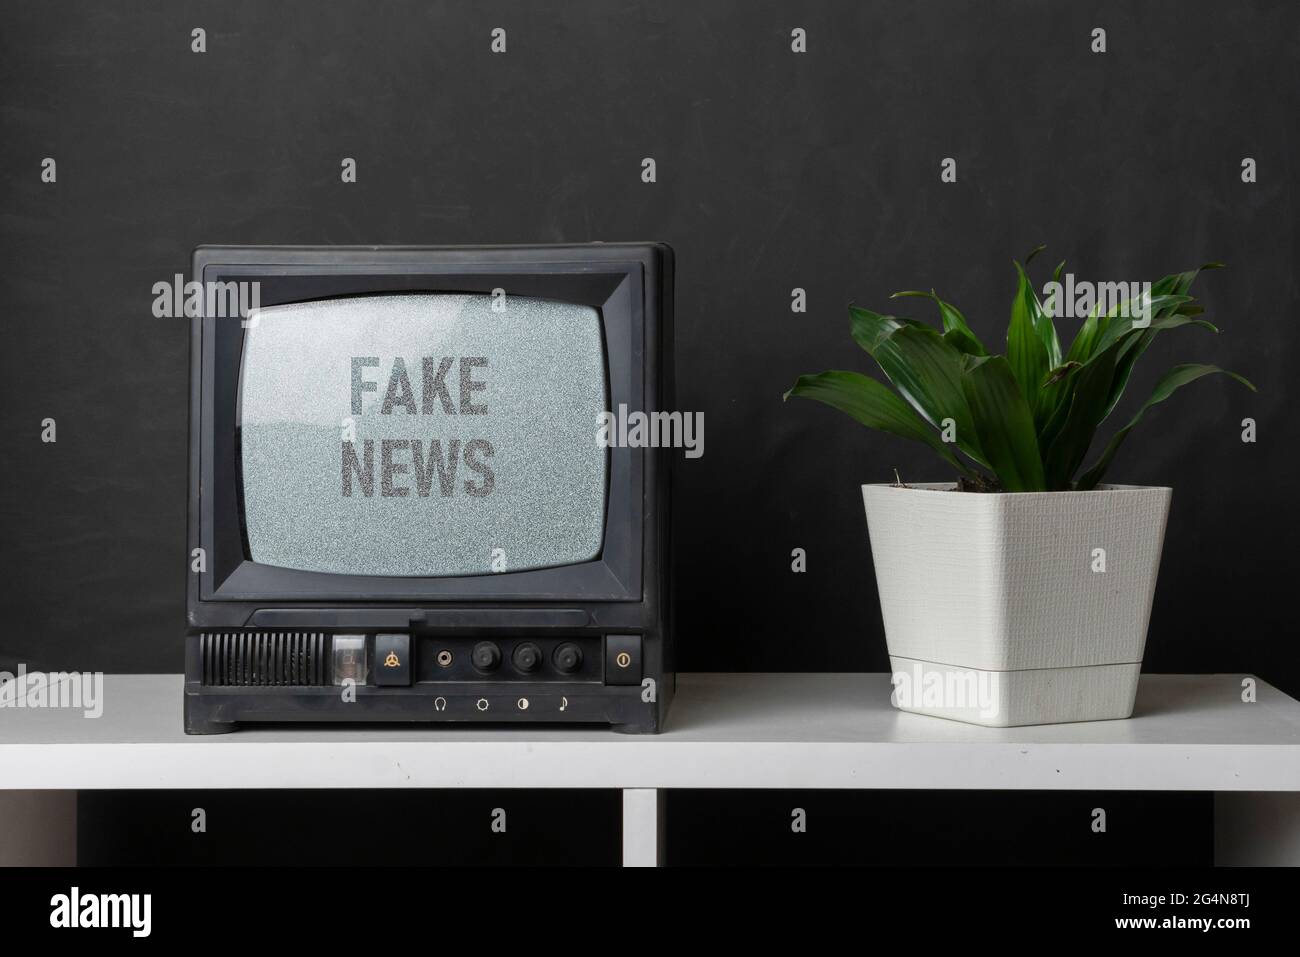 le vieux téléviseur d'époque avec bruit gris à l'écran avec fausses nouvelles texte superposé, debout sur l'étagère à la maison Banque D'Images